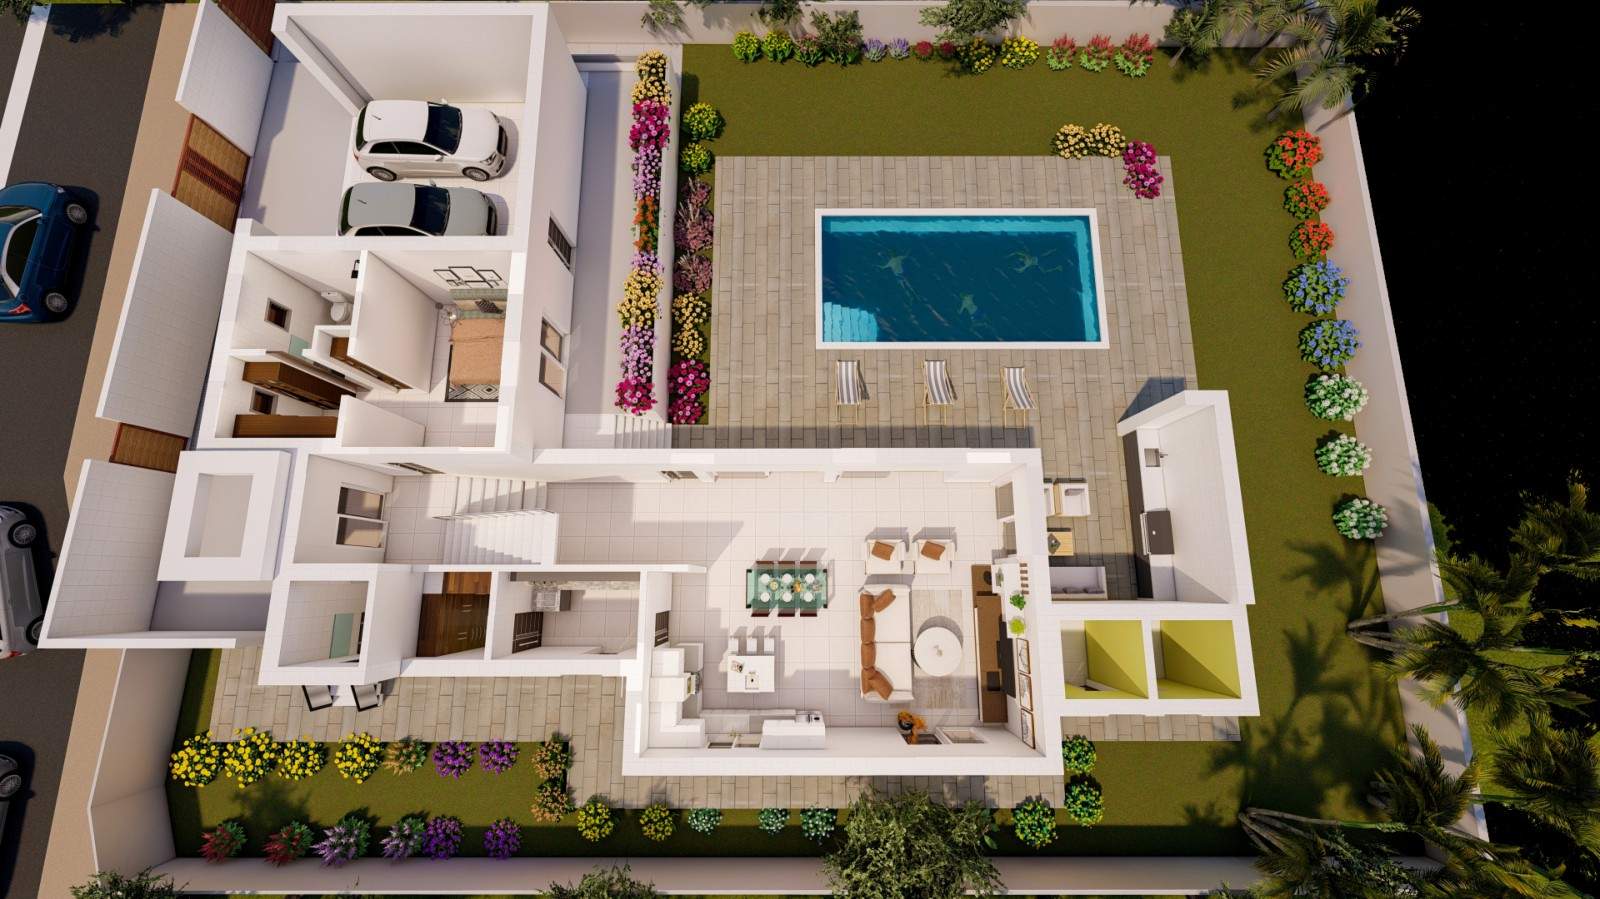 Villa de 4 dormitorios en construcción, en venta en Porto de Mós, Algarve_211039